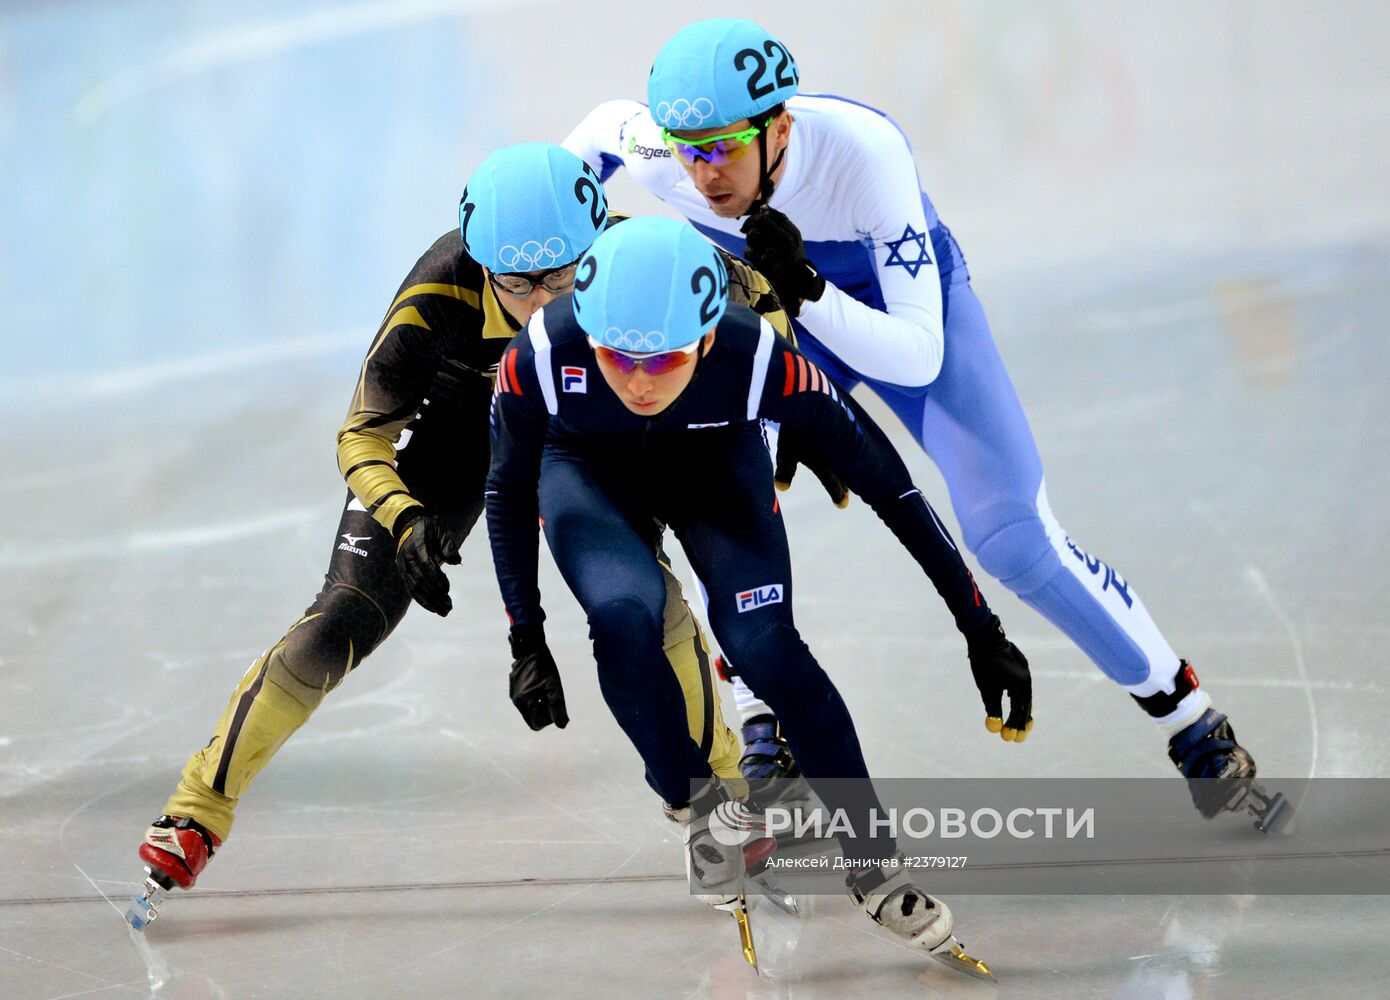 Олимпиада 2014. Шорт-трек. Мужчины. 500 метров. Предварительные заезды